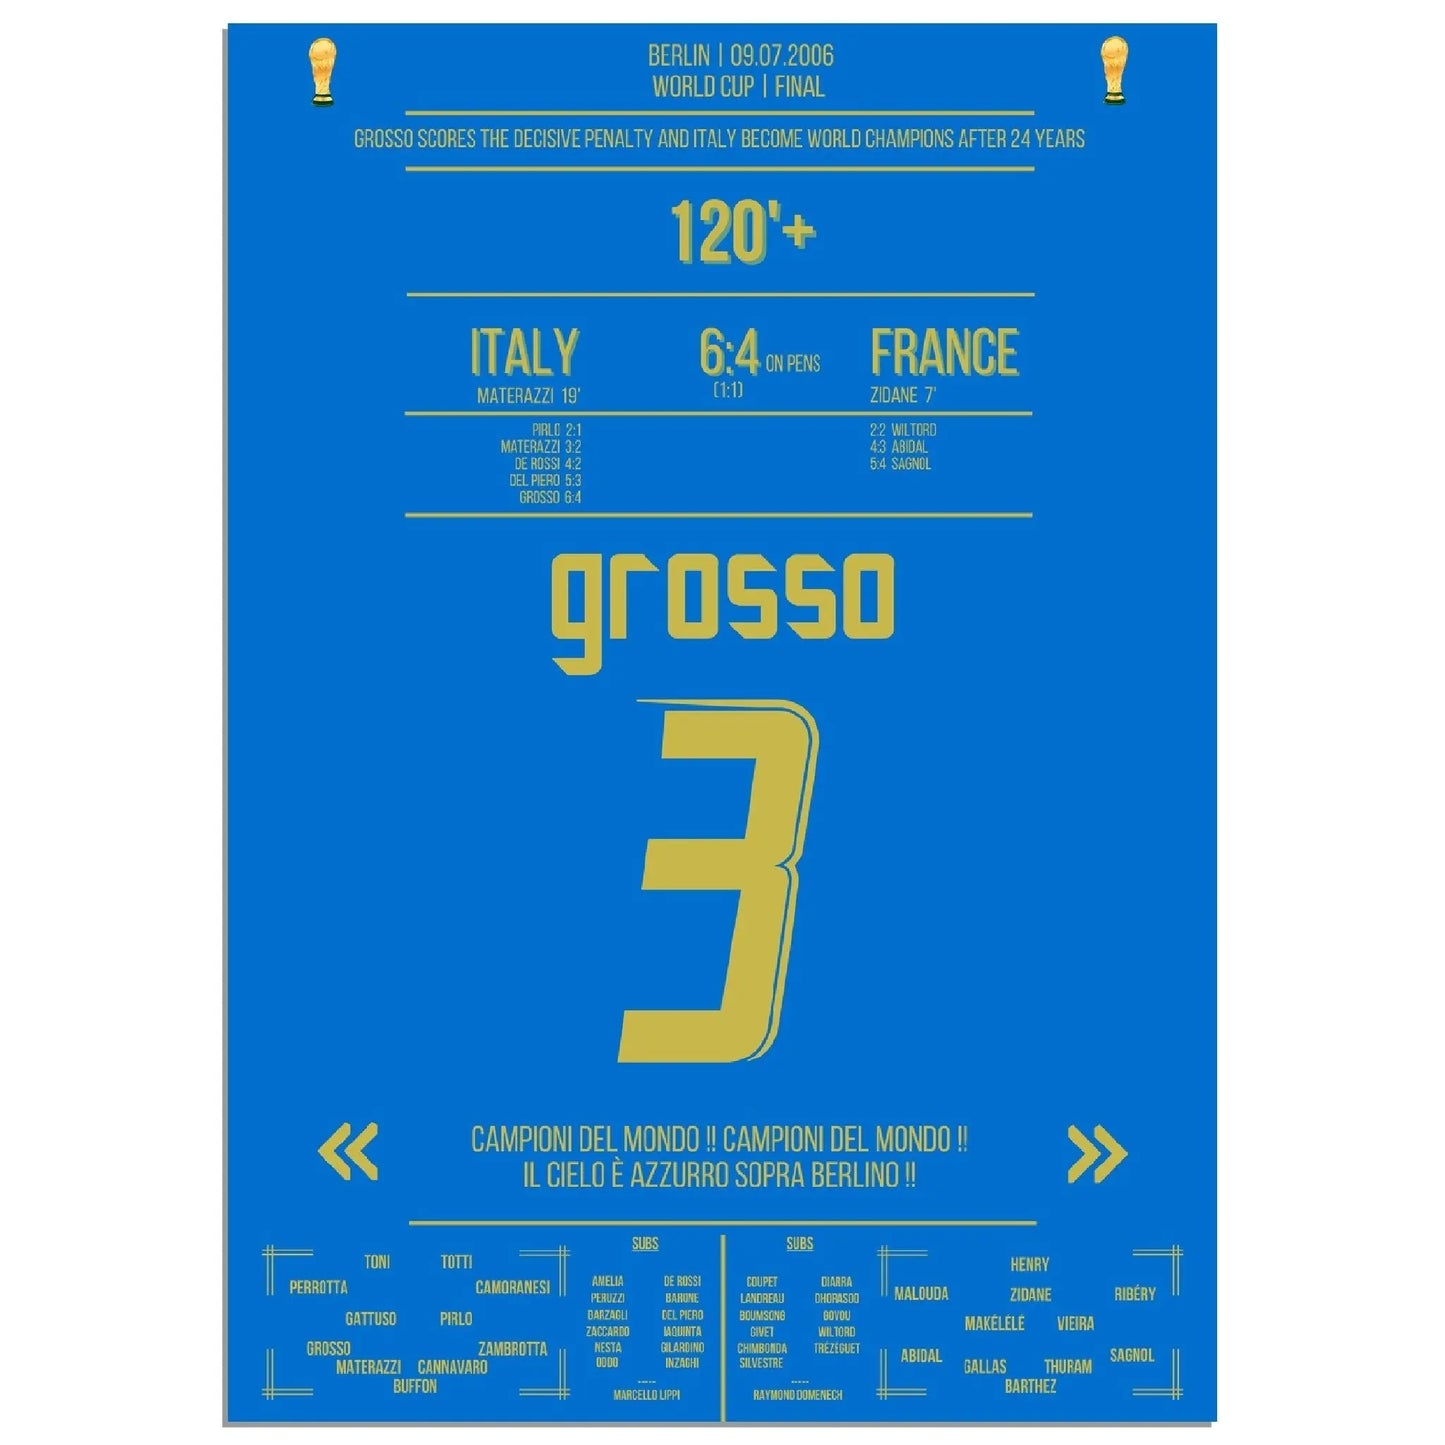 Grosso der ultimative Held Italiens WM Finale 2006 Italien - Frankreich 